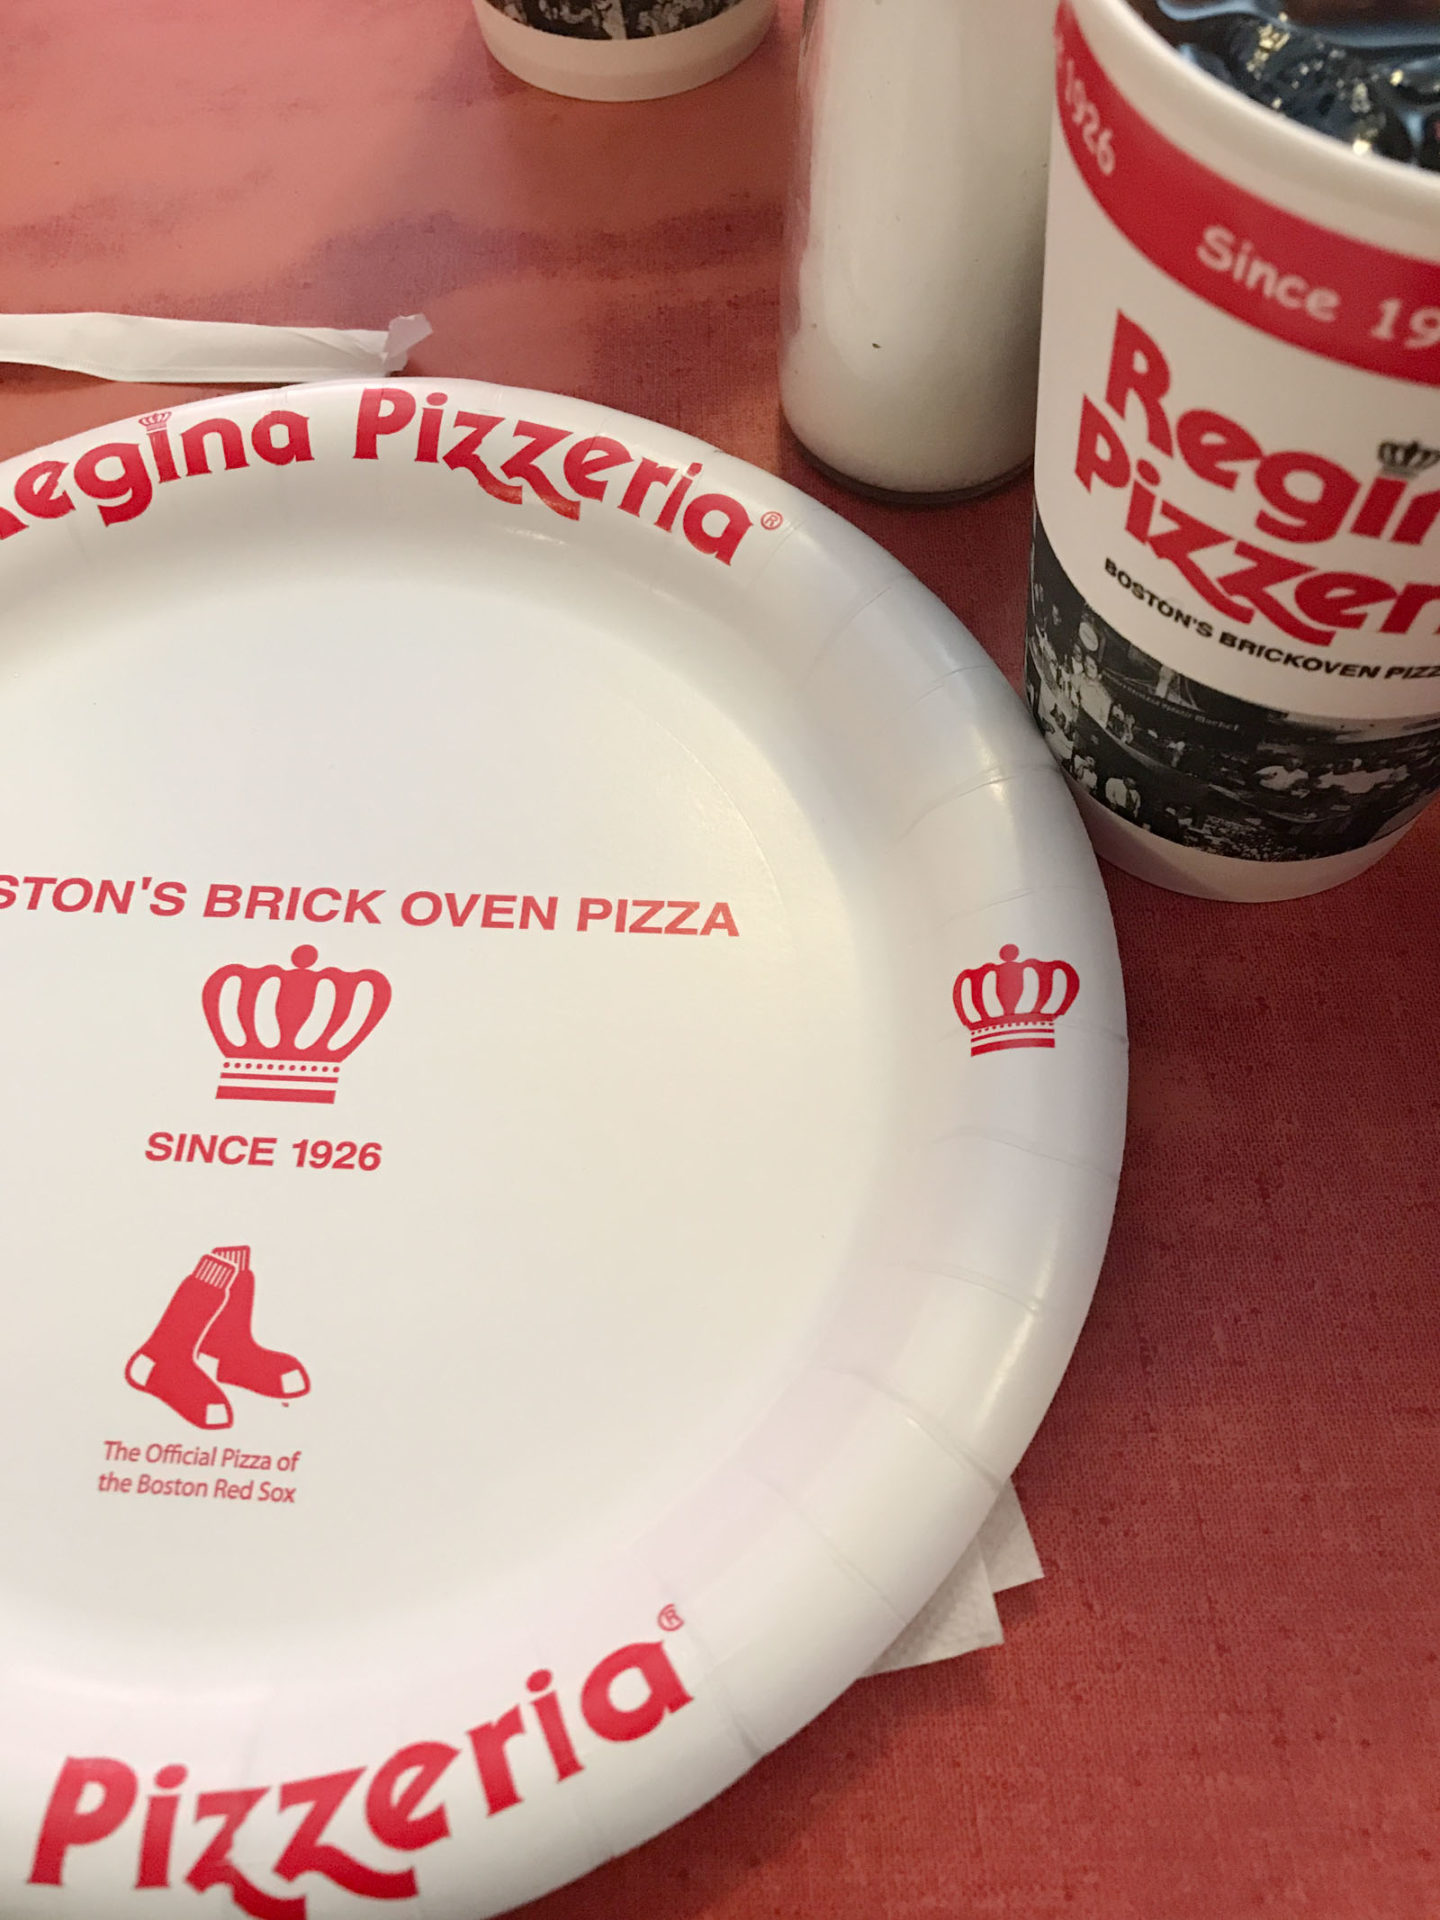 reginas pizza boston